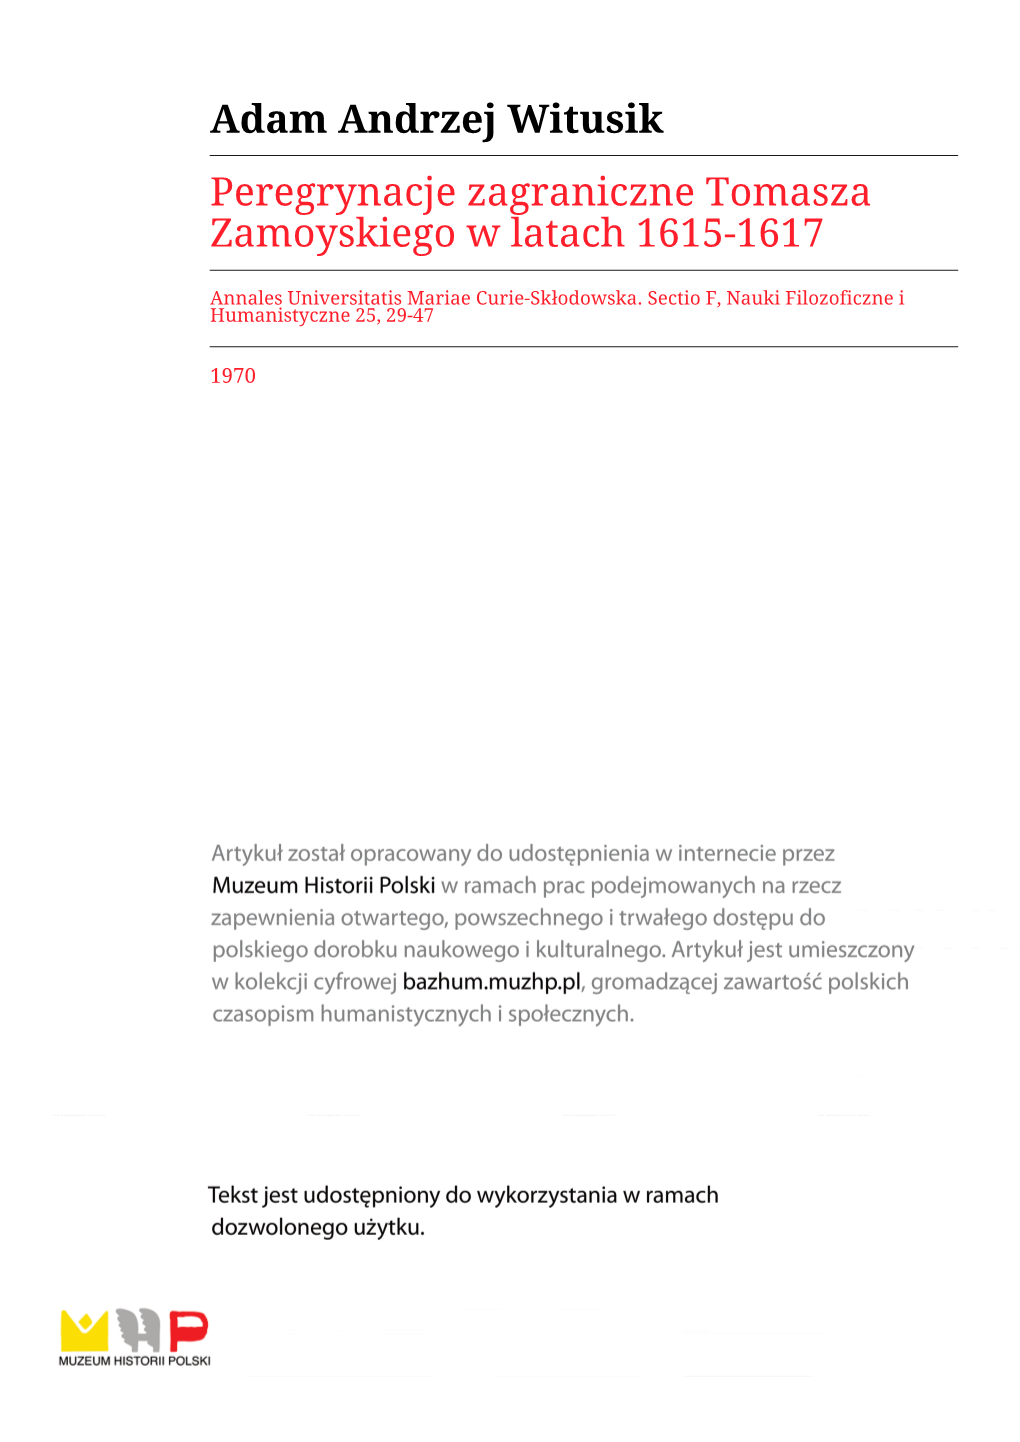 Peregrynacje Zagraniczne Tomasza Zamoyskiego W Latach 1615-1617